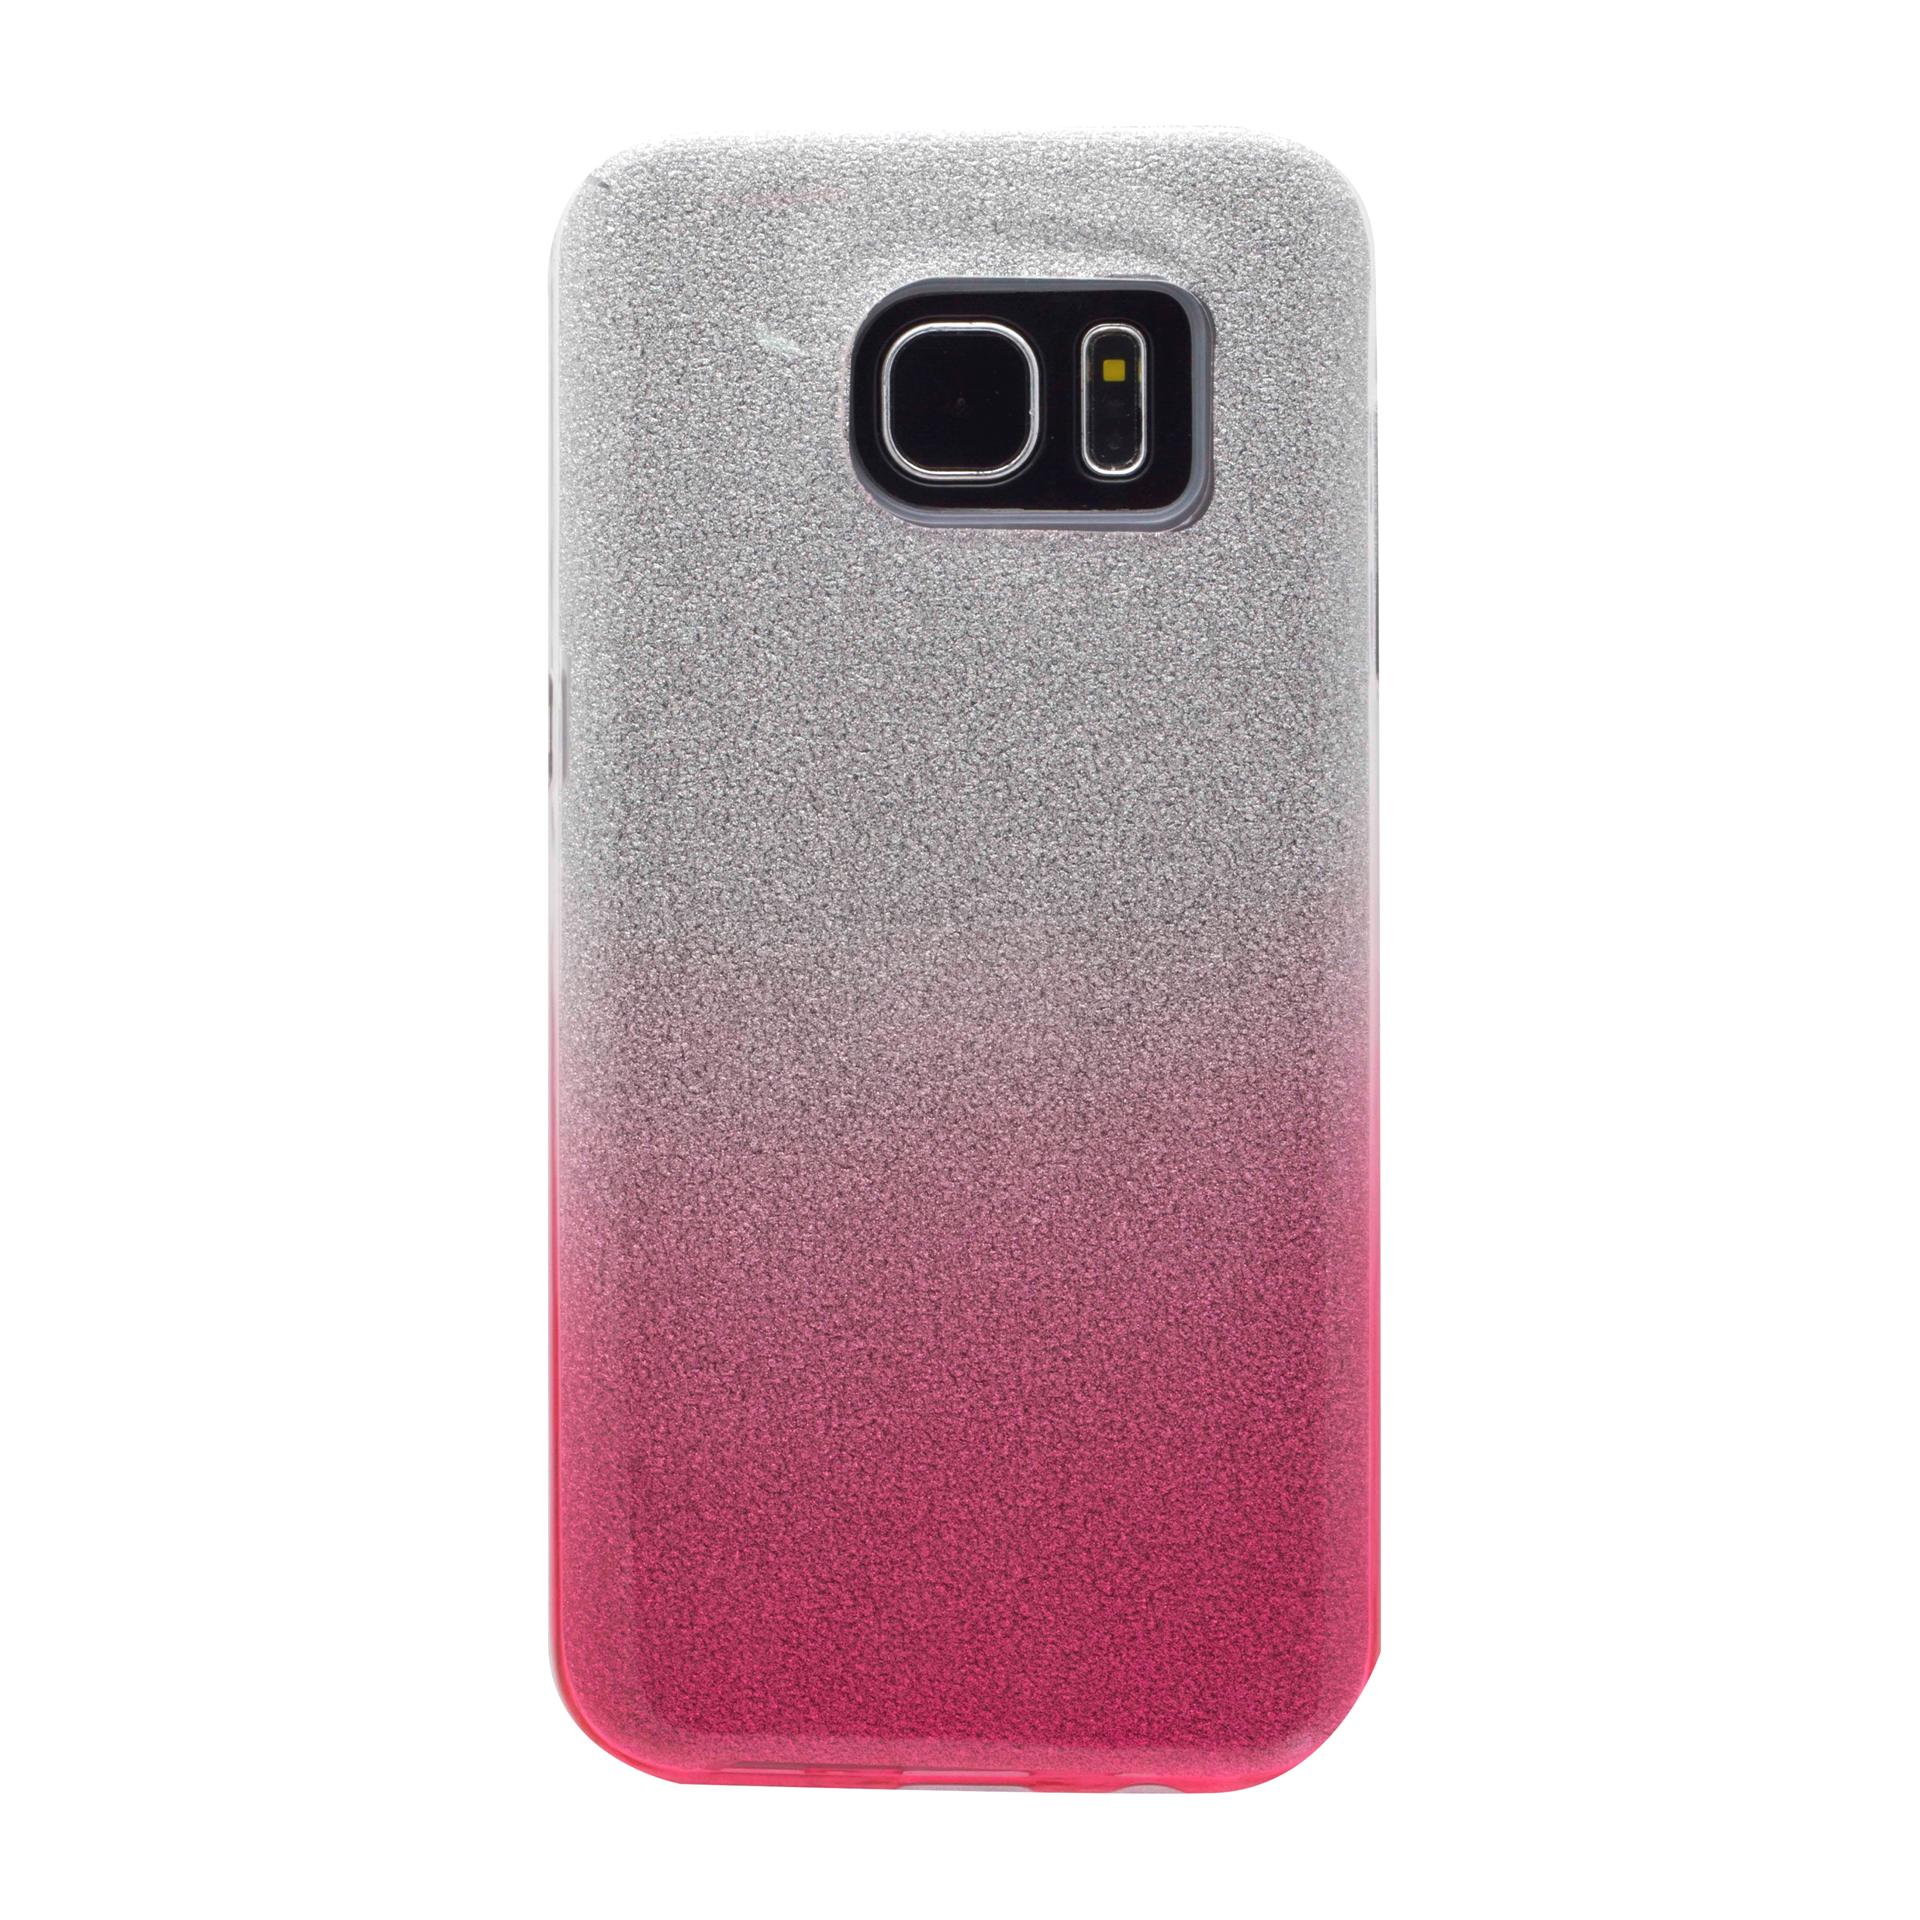 کاور مدل CORONA طرح اکلیلی مناسب برای گوشی سامسونگ Galaxy S7